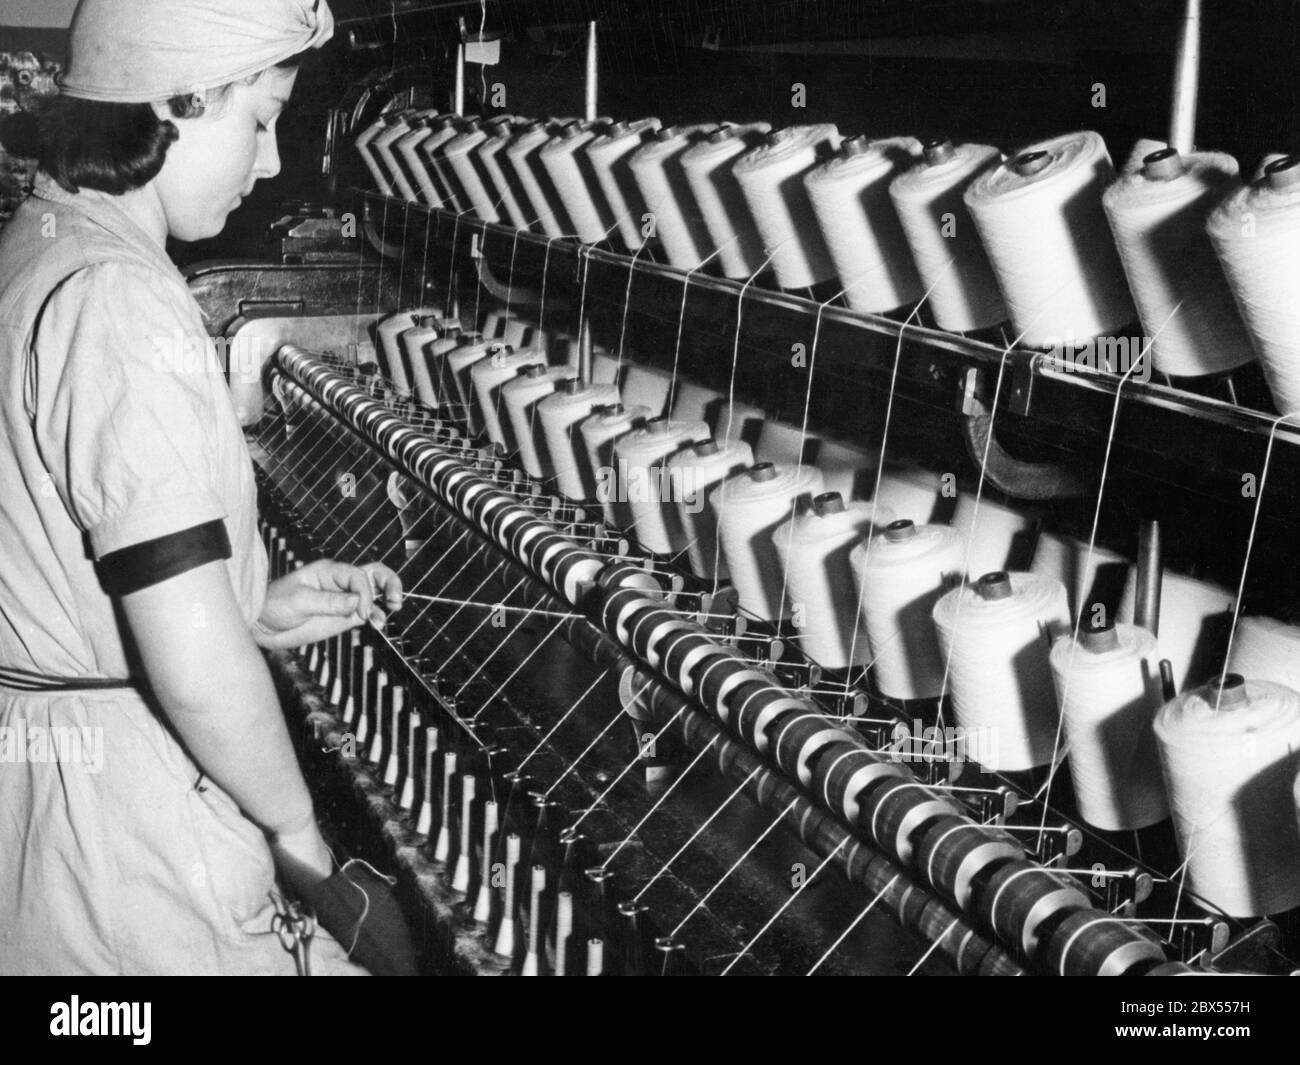 Nella scuola di filatura del mulino di filatura alsaziano Gluck (o Glueck) & Co. AG da Muehlhausen in Alsazia, una donna si infila un ago nella macchina di ritorcitura ad anello. La fotografia risale probabilmente agli anni trenta. Foto Stock